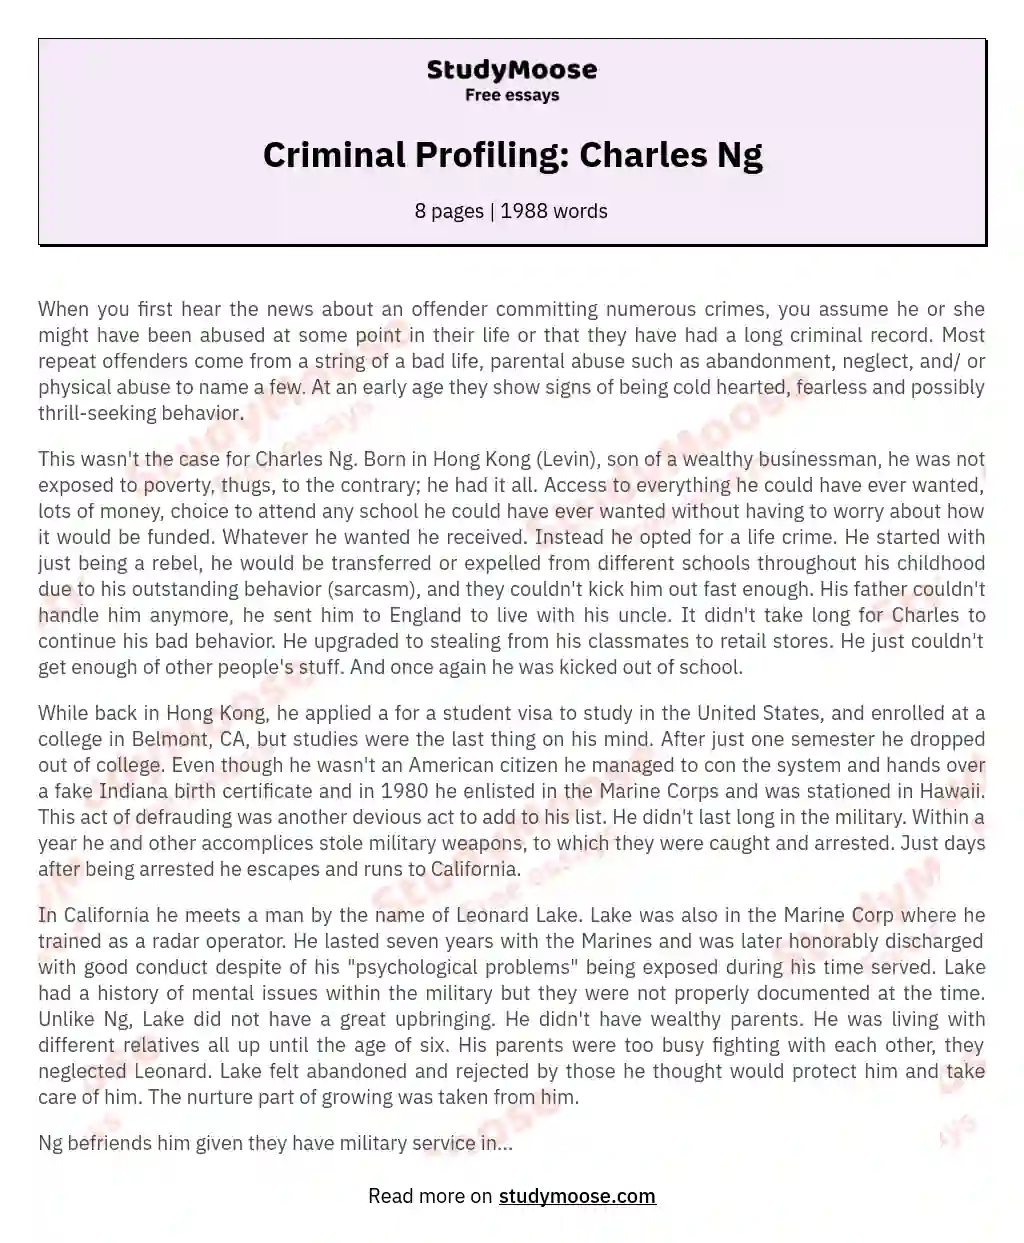 Criminal Profiling: Charles Ng essay